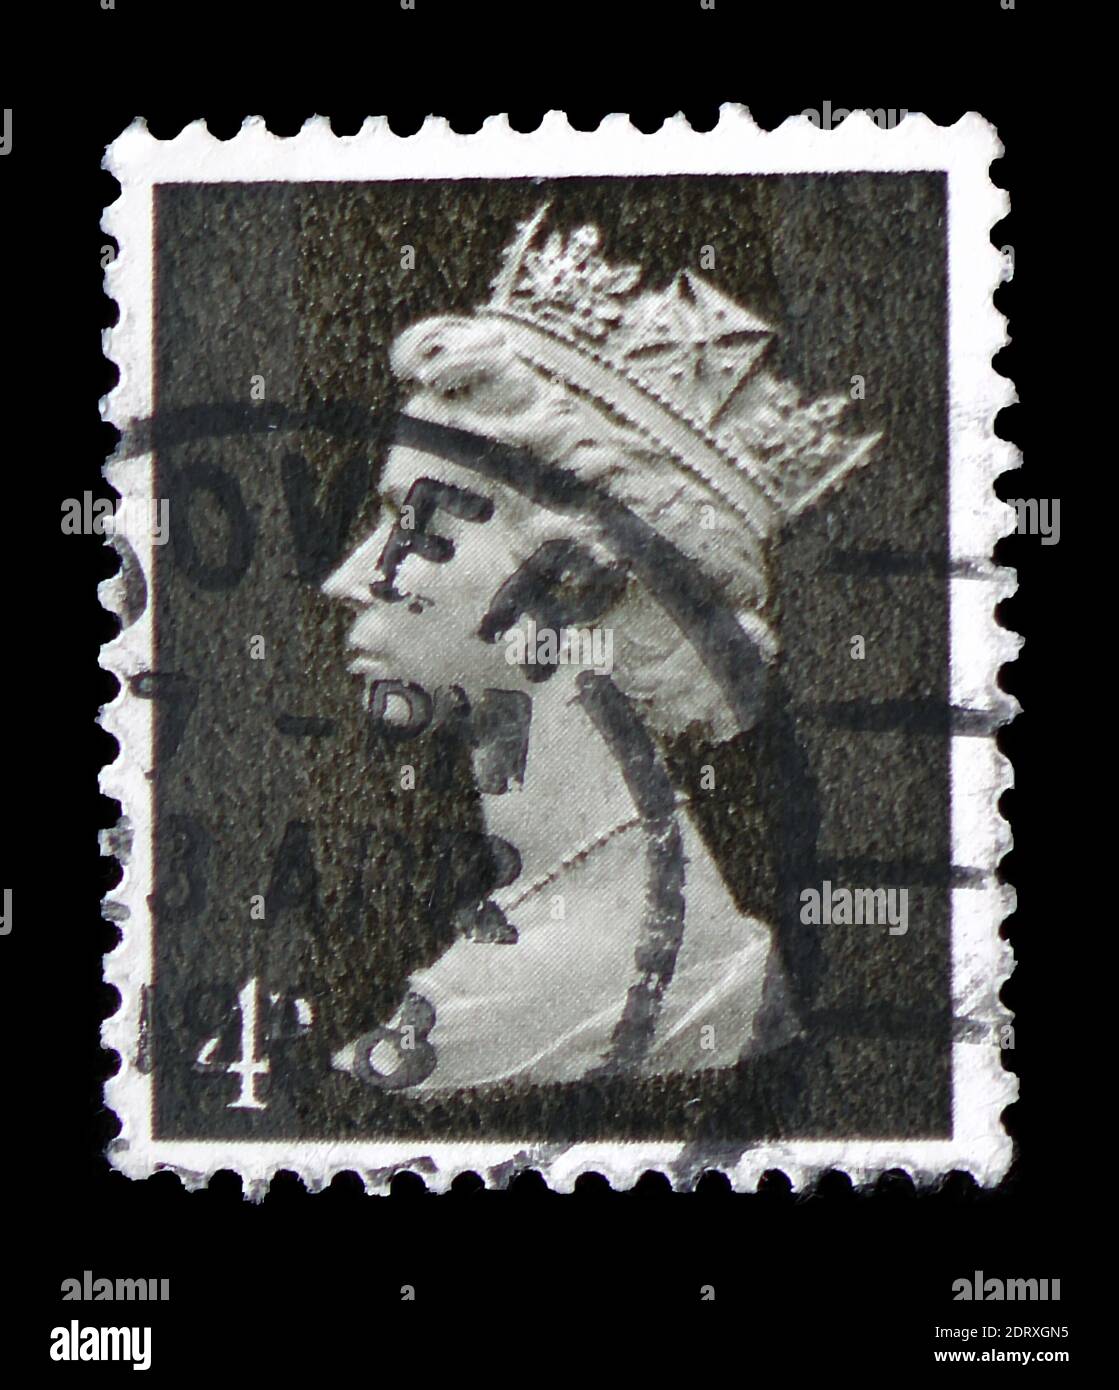 MOSKAU, RUSSLAND - 14. FEBRUAR 2019: Eine in Großbritannien gedruckte Briefmarke zeigt Queen Elizabeth II - 4d Predecimal Machin Serie, um 1968 Stockfoto